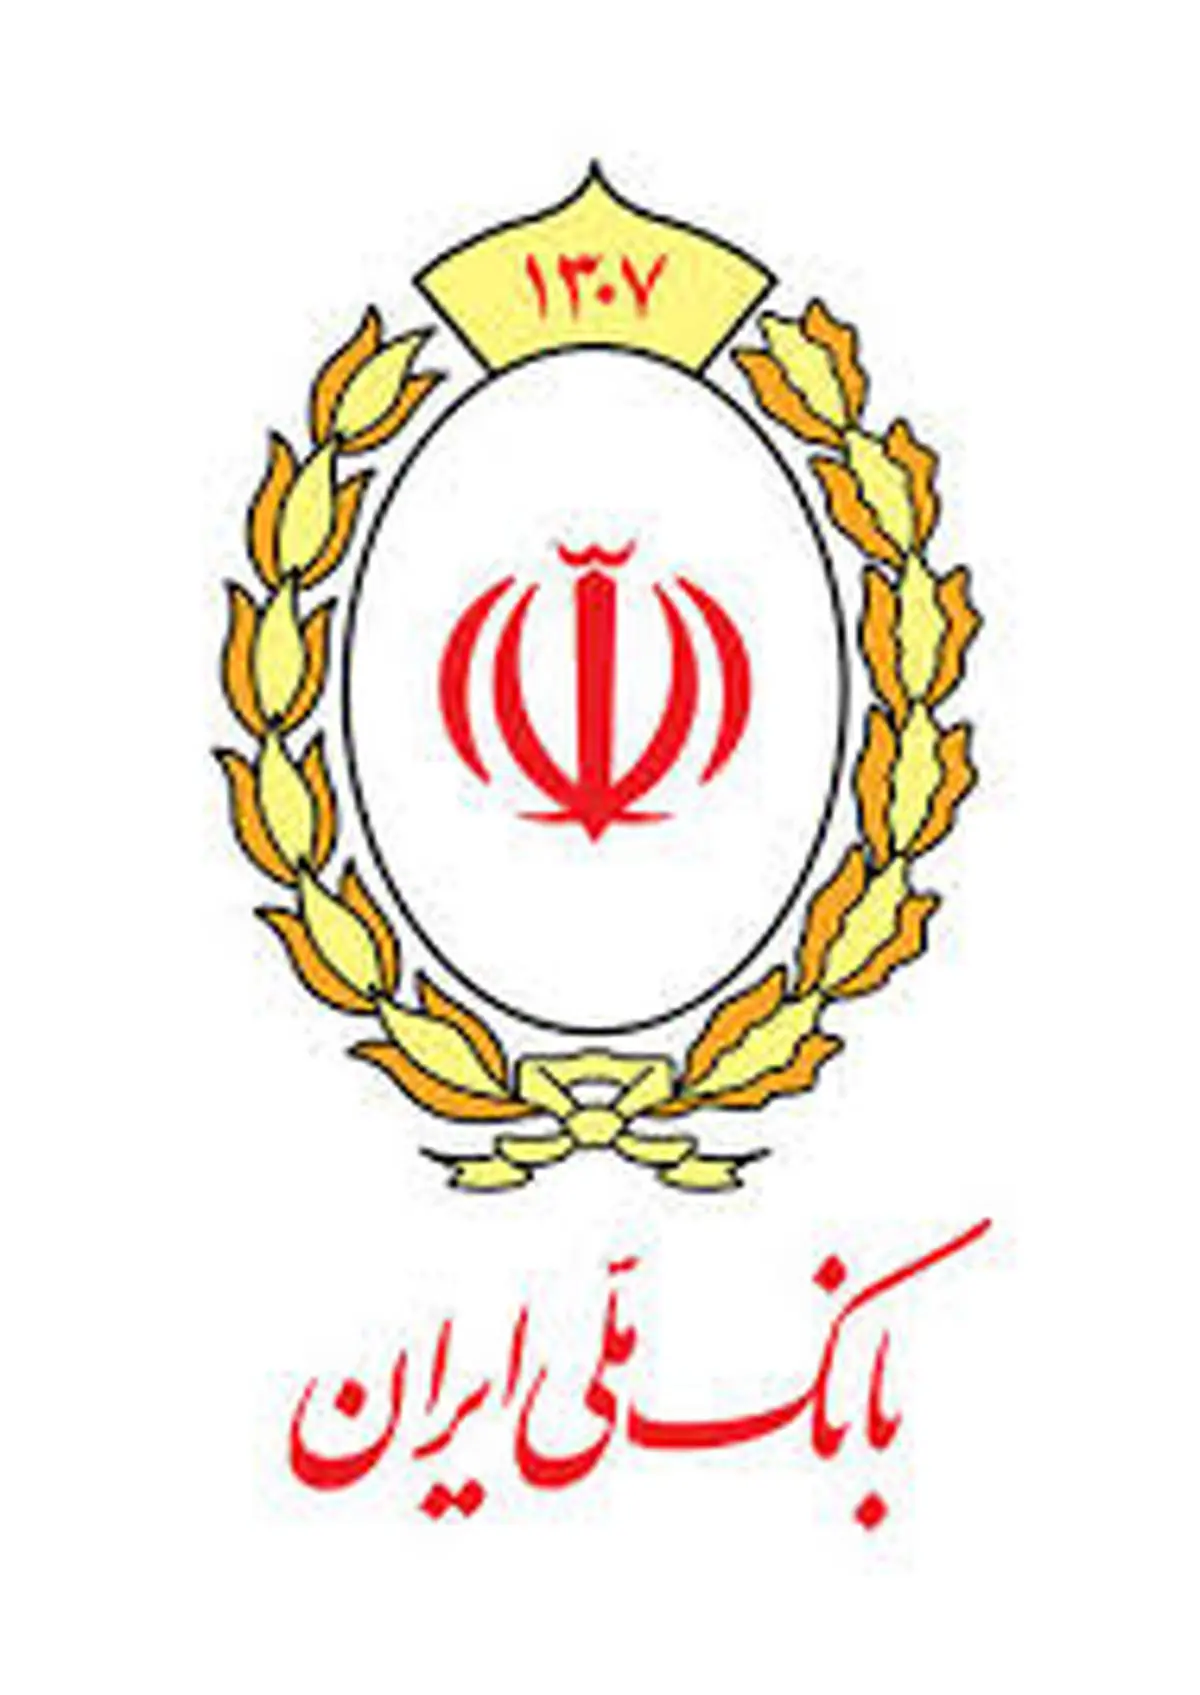 پرداخت وام ازدواج بانک ملی ایران از مرز یکصد هزار فقره عبور کرد

